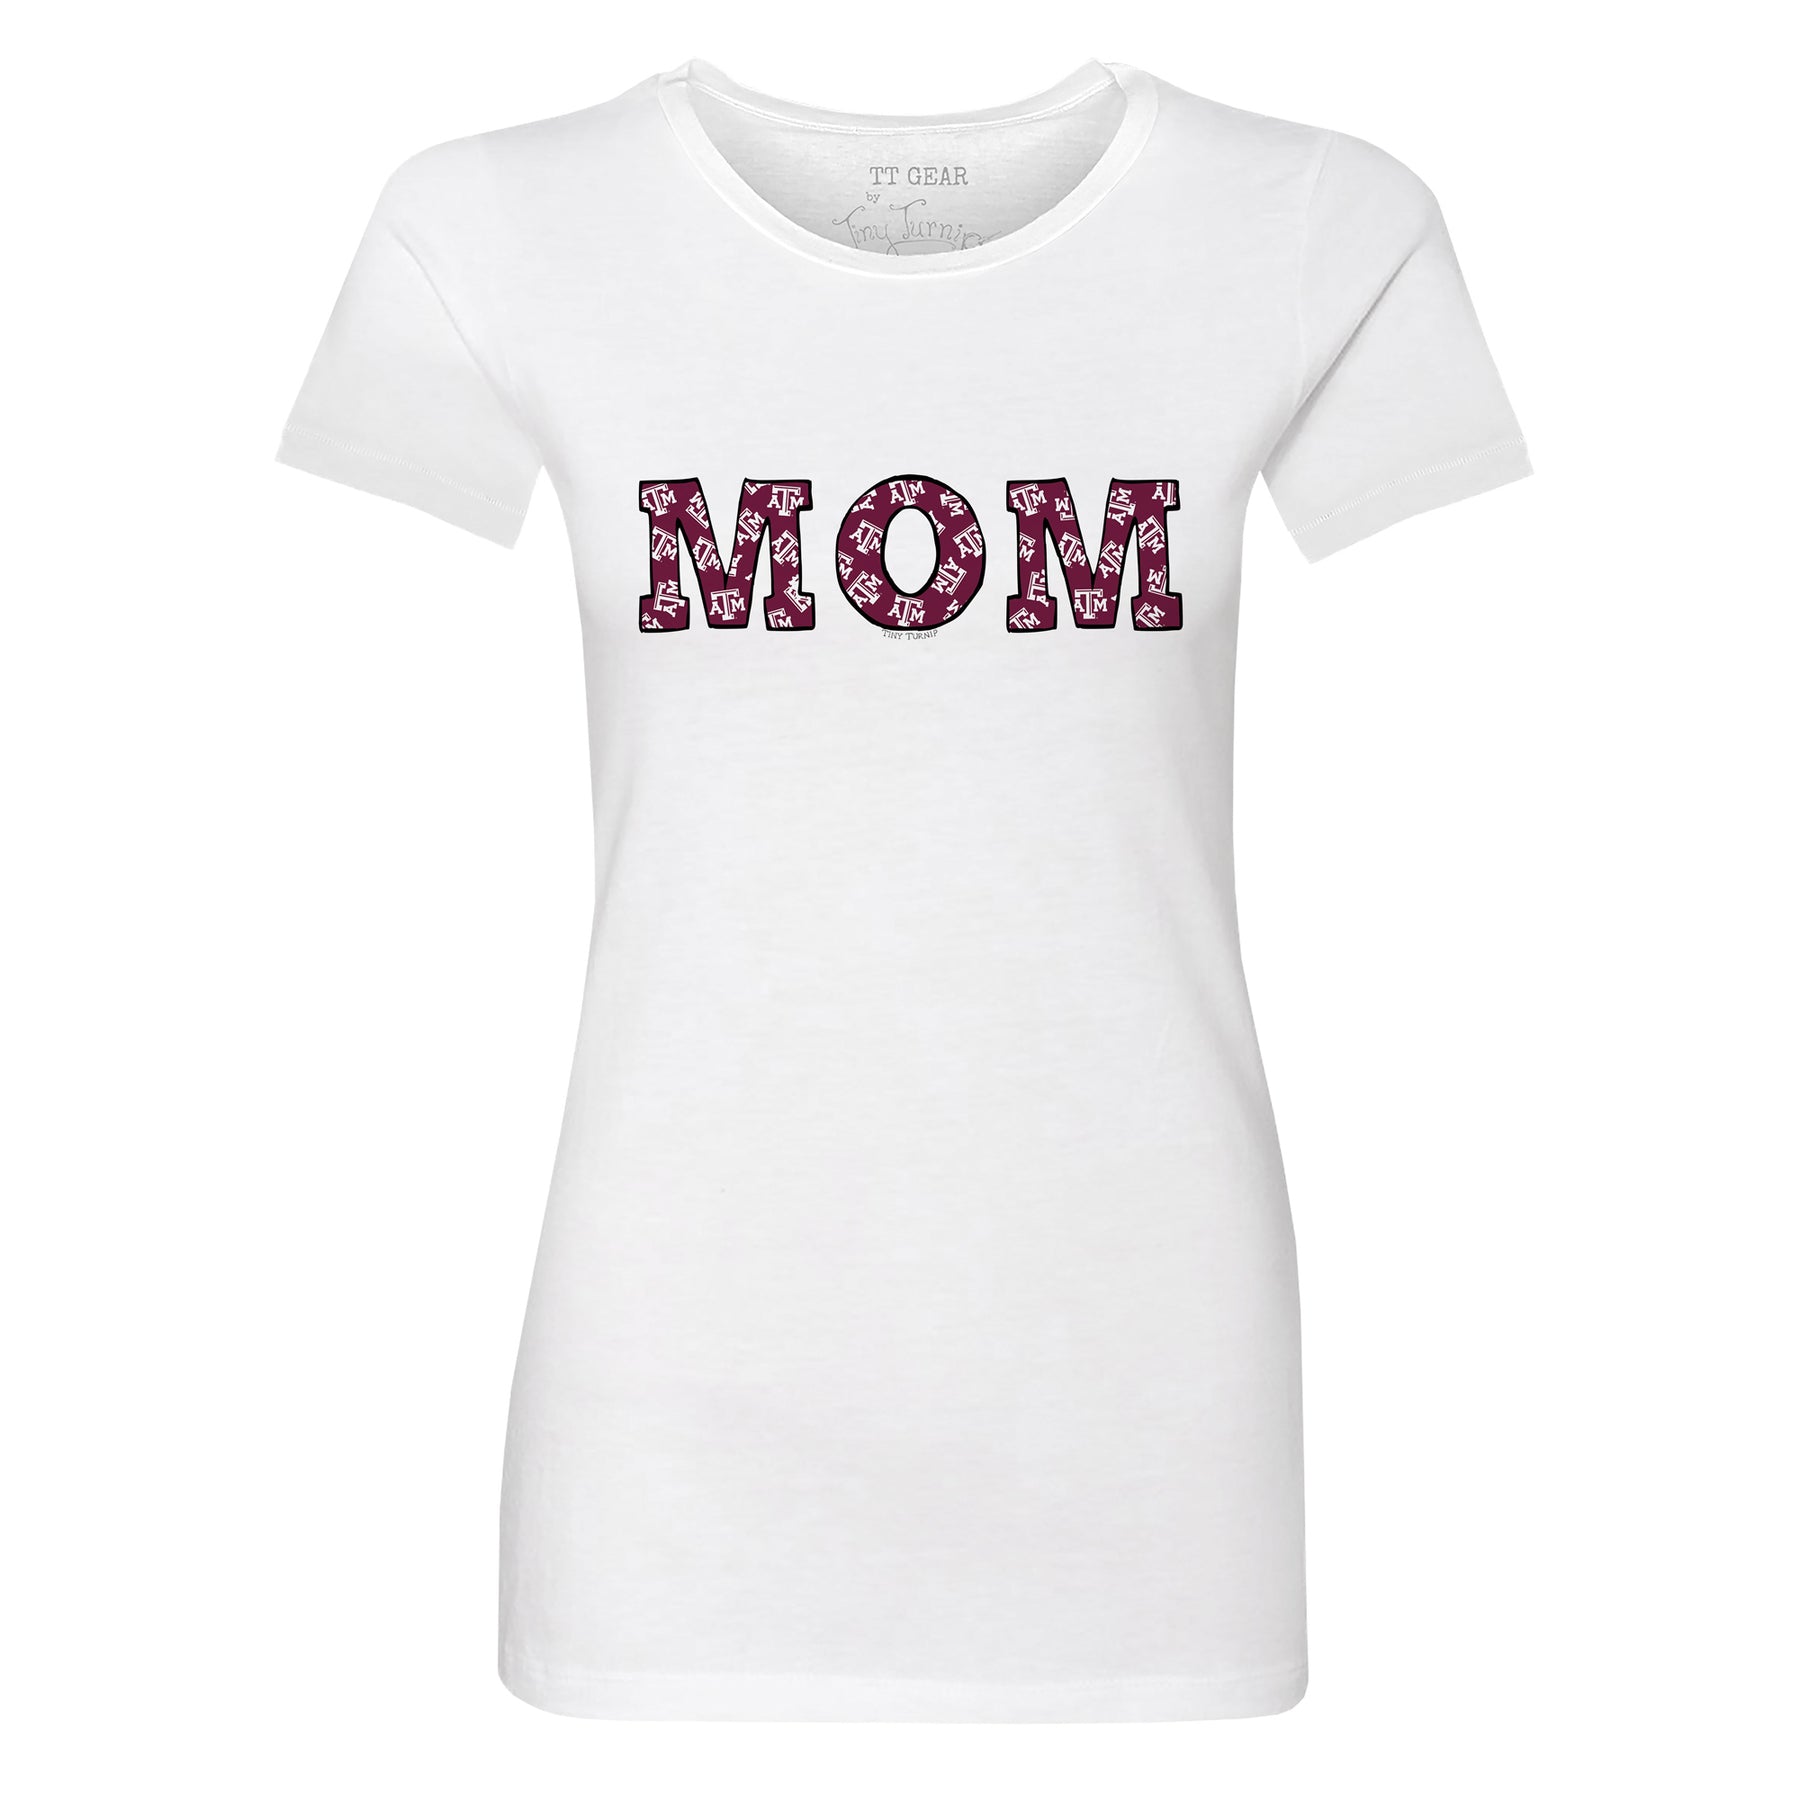 Texas A&M Aggies Mom Tee Shirt